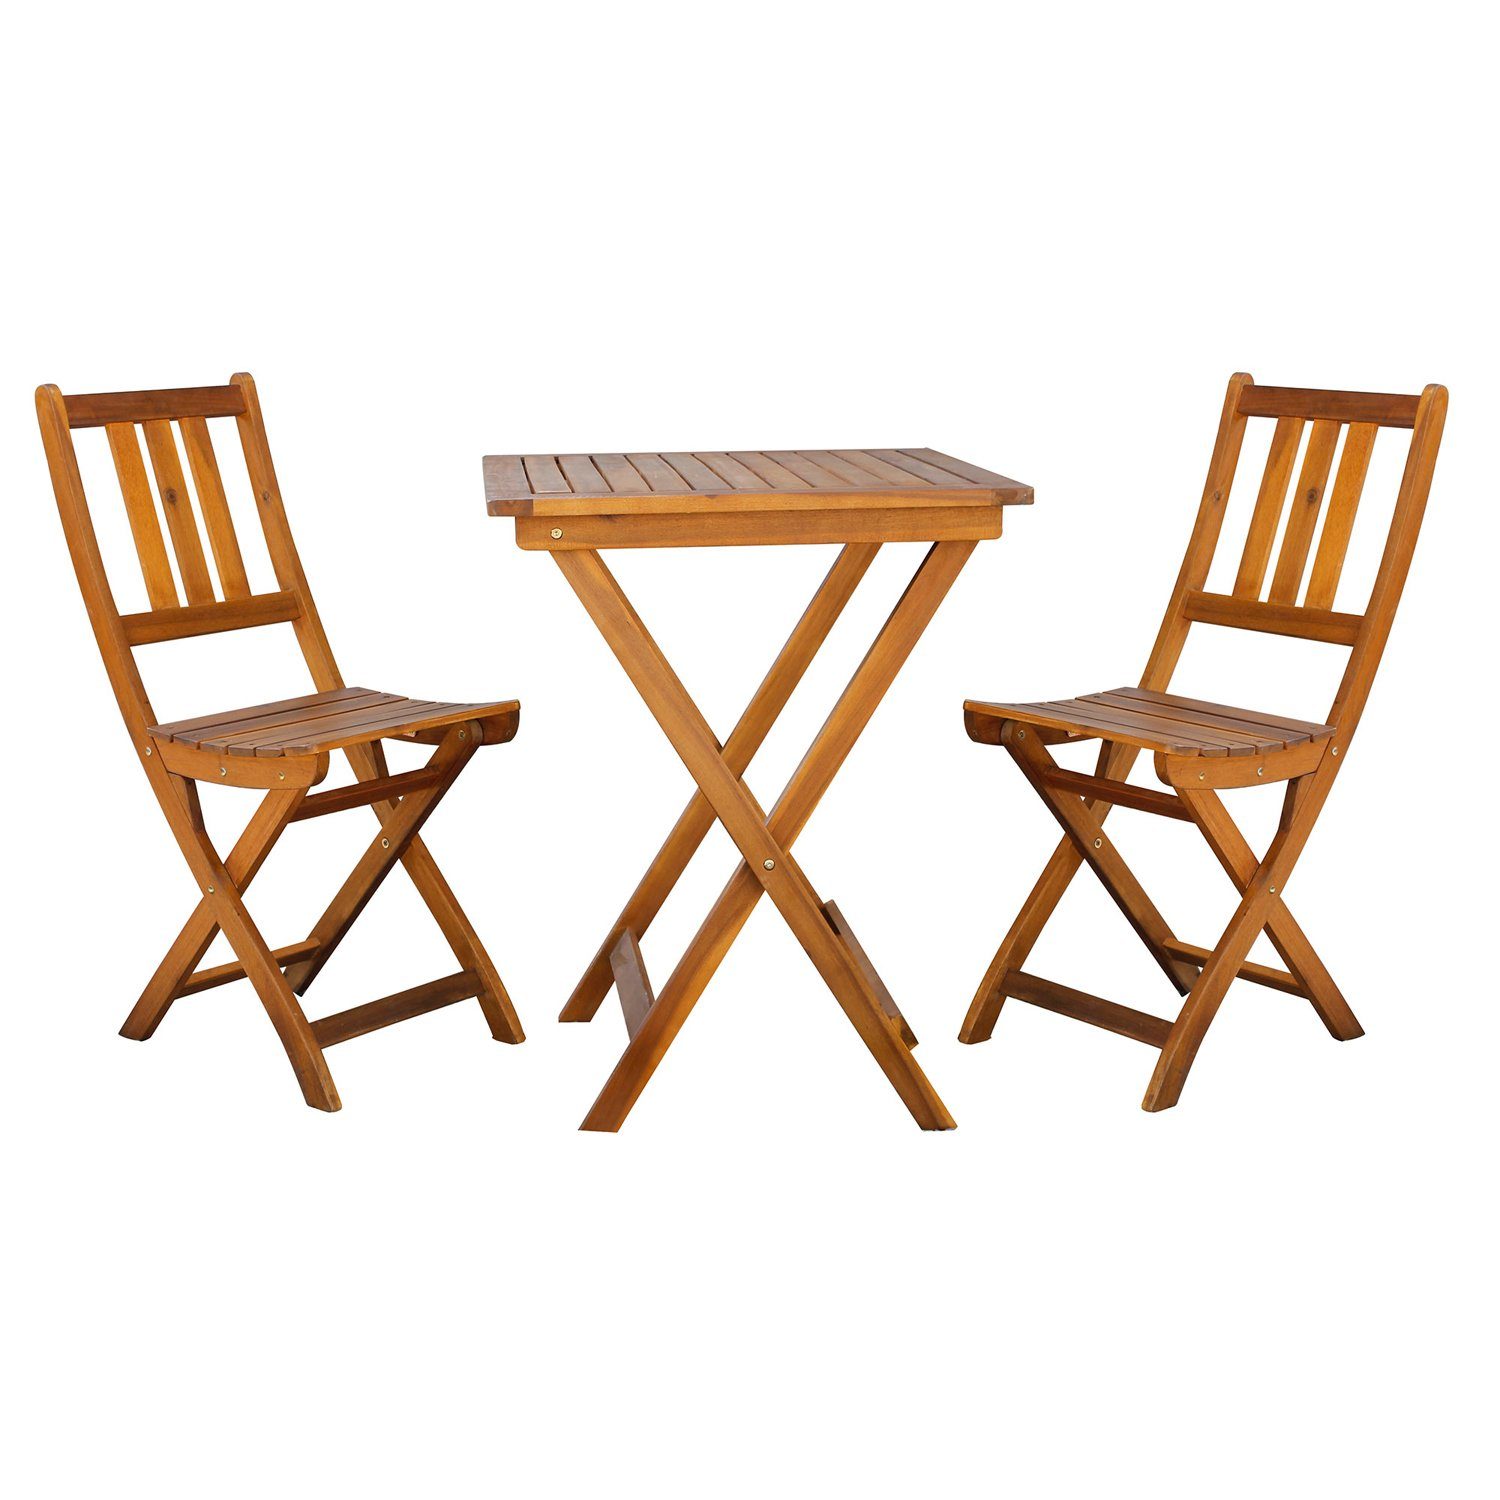 Mojawo Essgruppe Akazienholz Balkon-Set 3tlg. Bistroset Tisch 80x80cm + 2 Gartenstühle